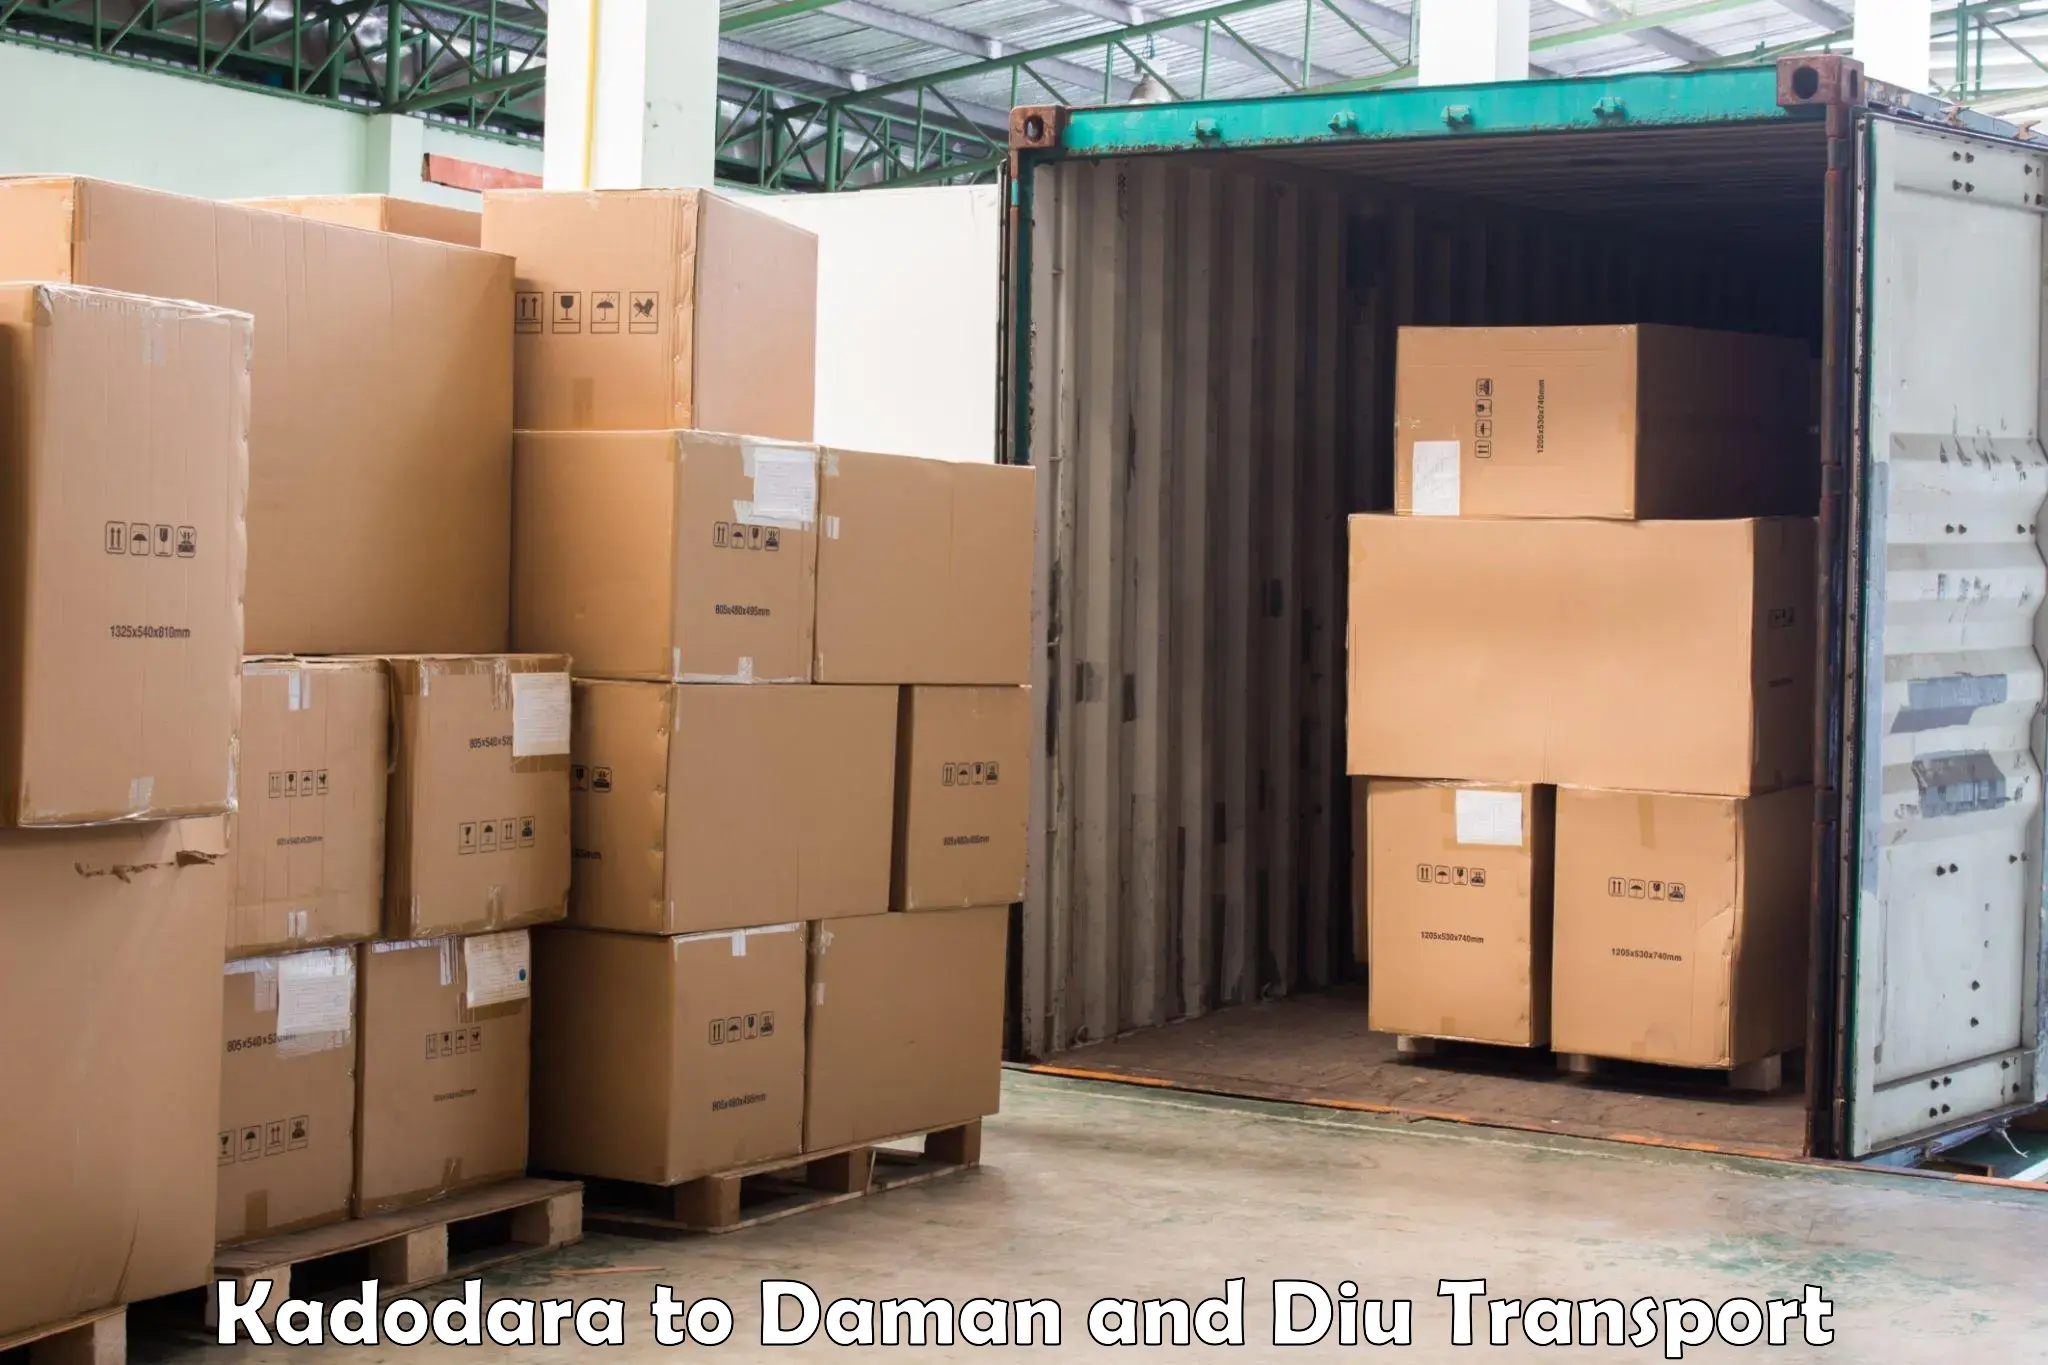 Transport in sharing Kadodara to Daman